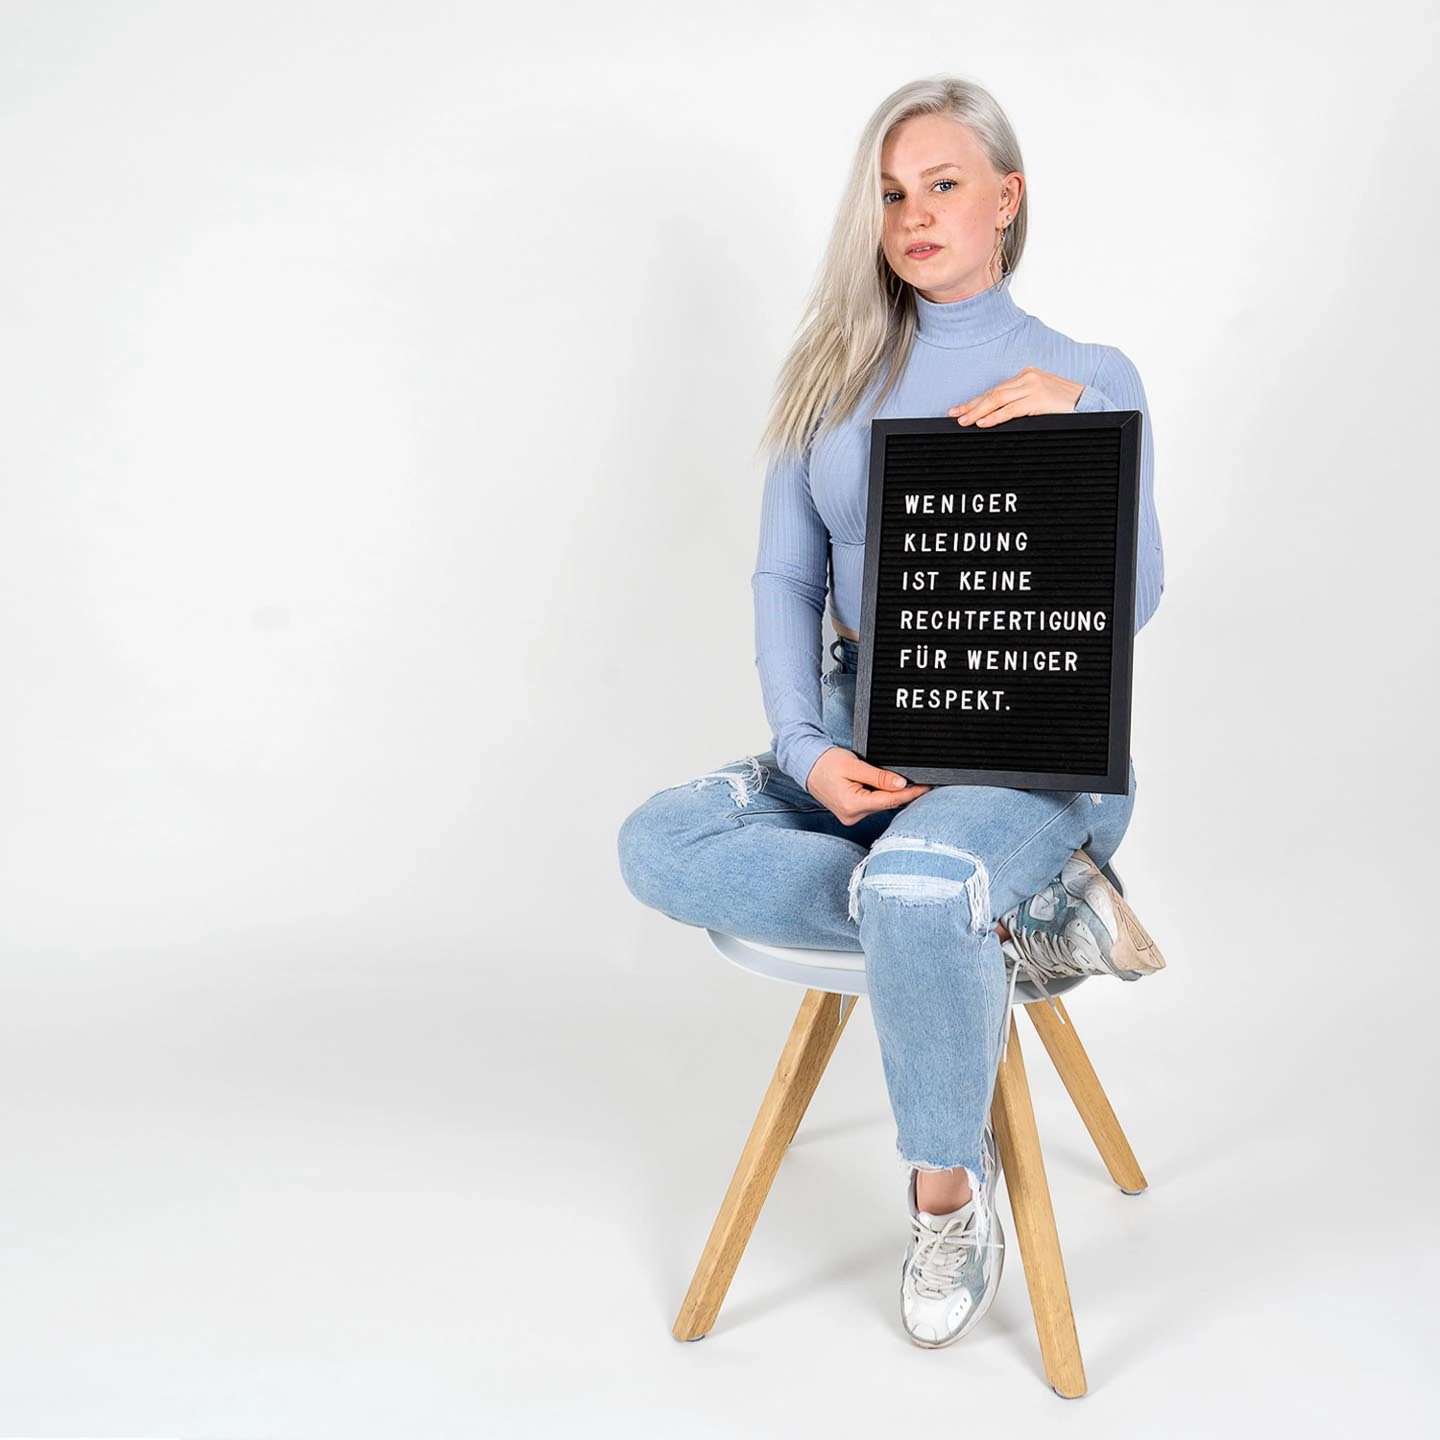 Eine Frau in blauem Pullover und Jeans sitzt auf einem Hocker und hält ein schwarzes Schild mit weißer Aufschrift für das Fotoshooting für 'Was hattest du an?'.